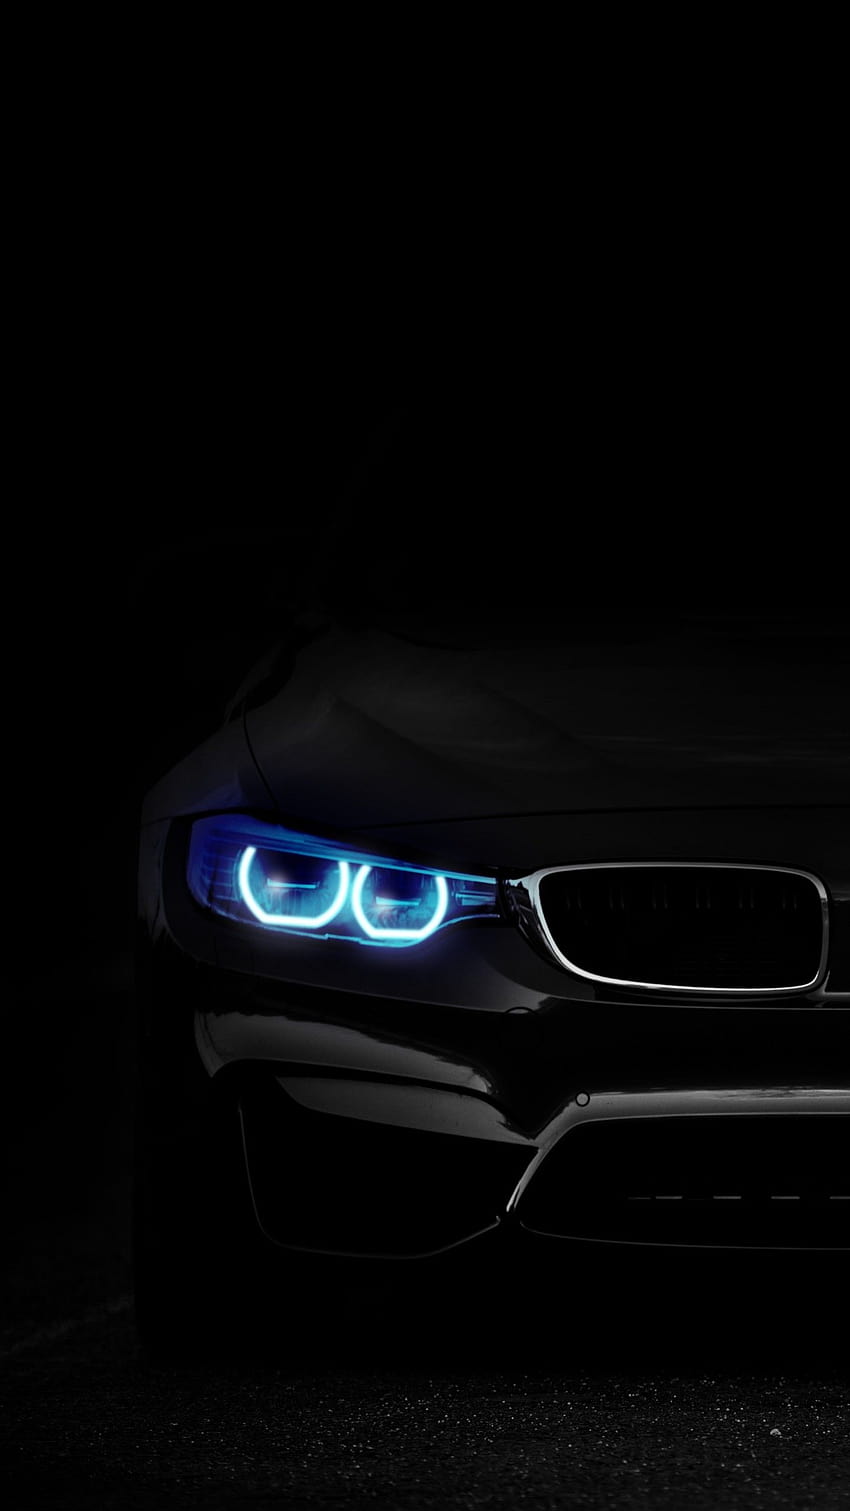 BMW M3, Angel Eyes, schwarzer Hintergrund, schwarz/dunkel, dunkles Auto amoled HD-Handy-Hintergrundbild